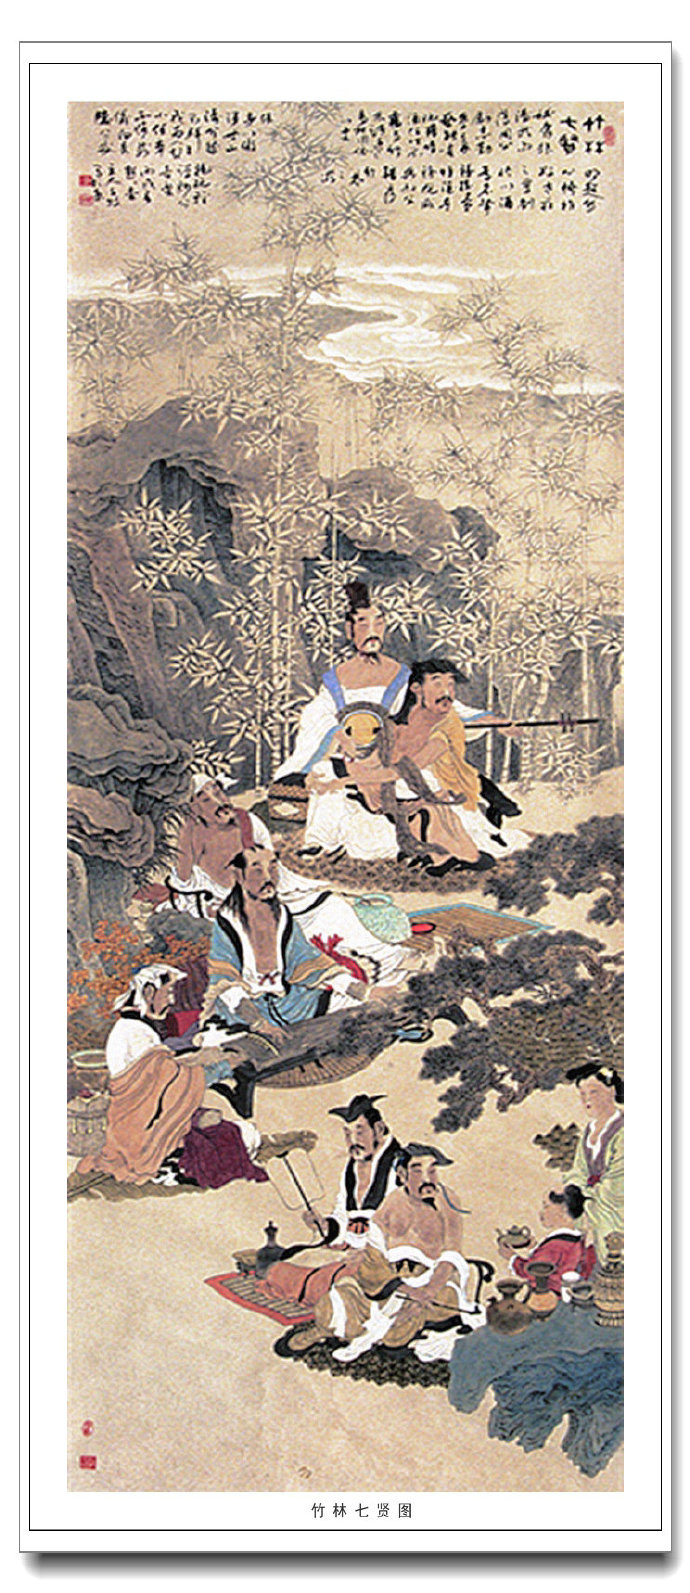 李子牧的作品承袭了中国古代文人画的温宁与恬静,在笔墨表现,色彩晕染